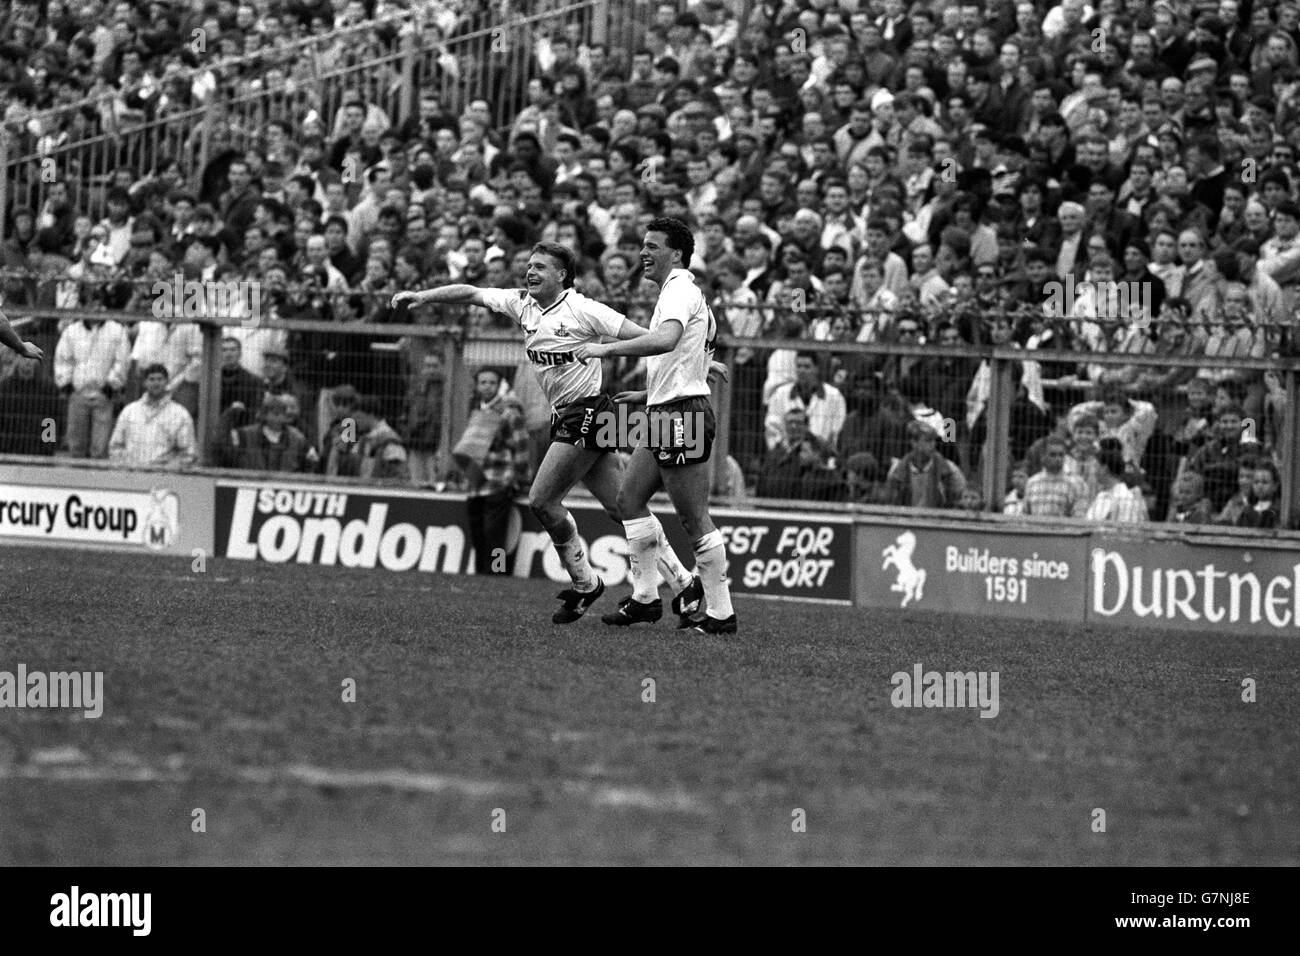 Jubilation pour le buteur Paul Stewart (r) de Tottenham Hotspur et son coéquipier Paul Gascoigne à la Den, après que Stewart ait marqué le second but de Spurs.Les Londoniens du Nord battent Millwall 5-0. Banque D'Images